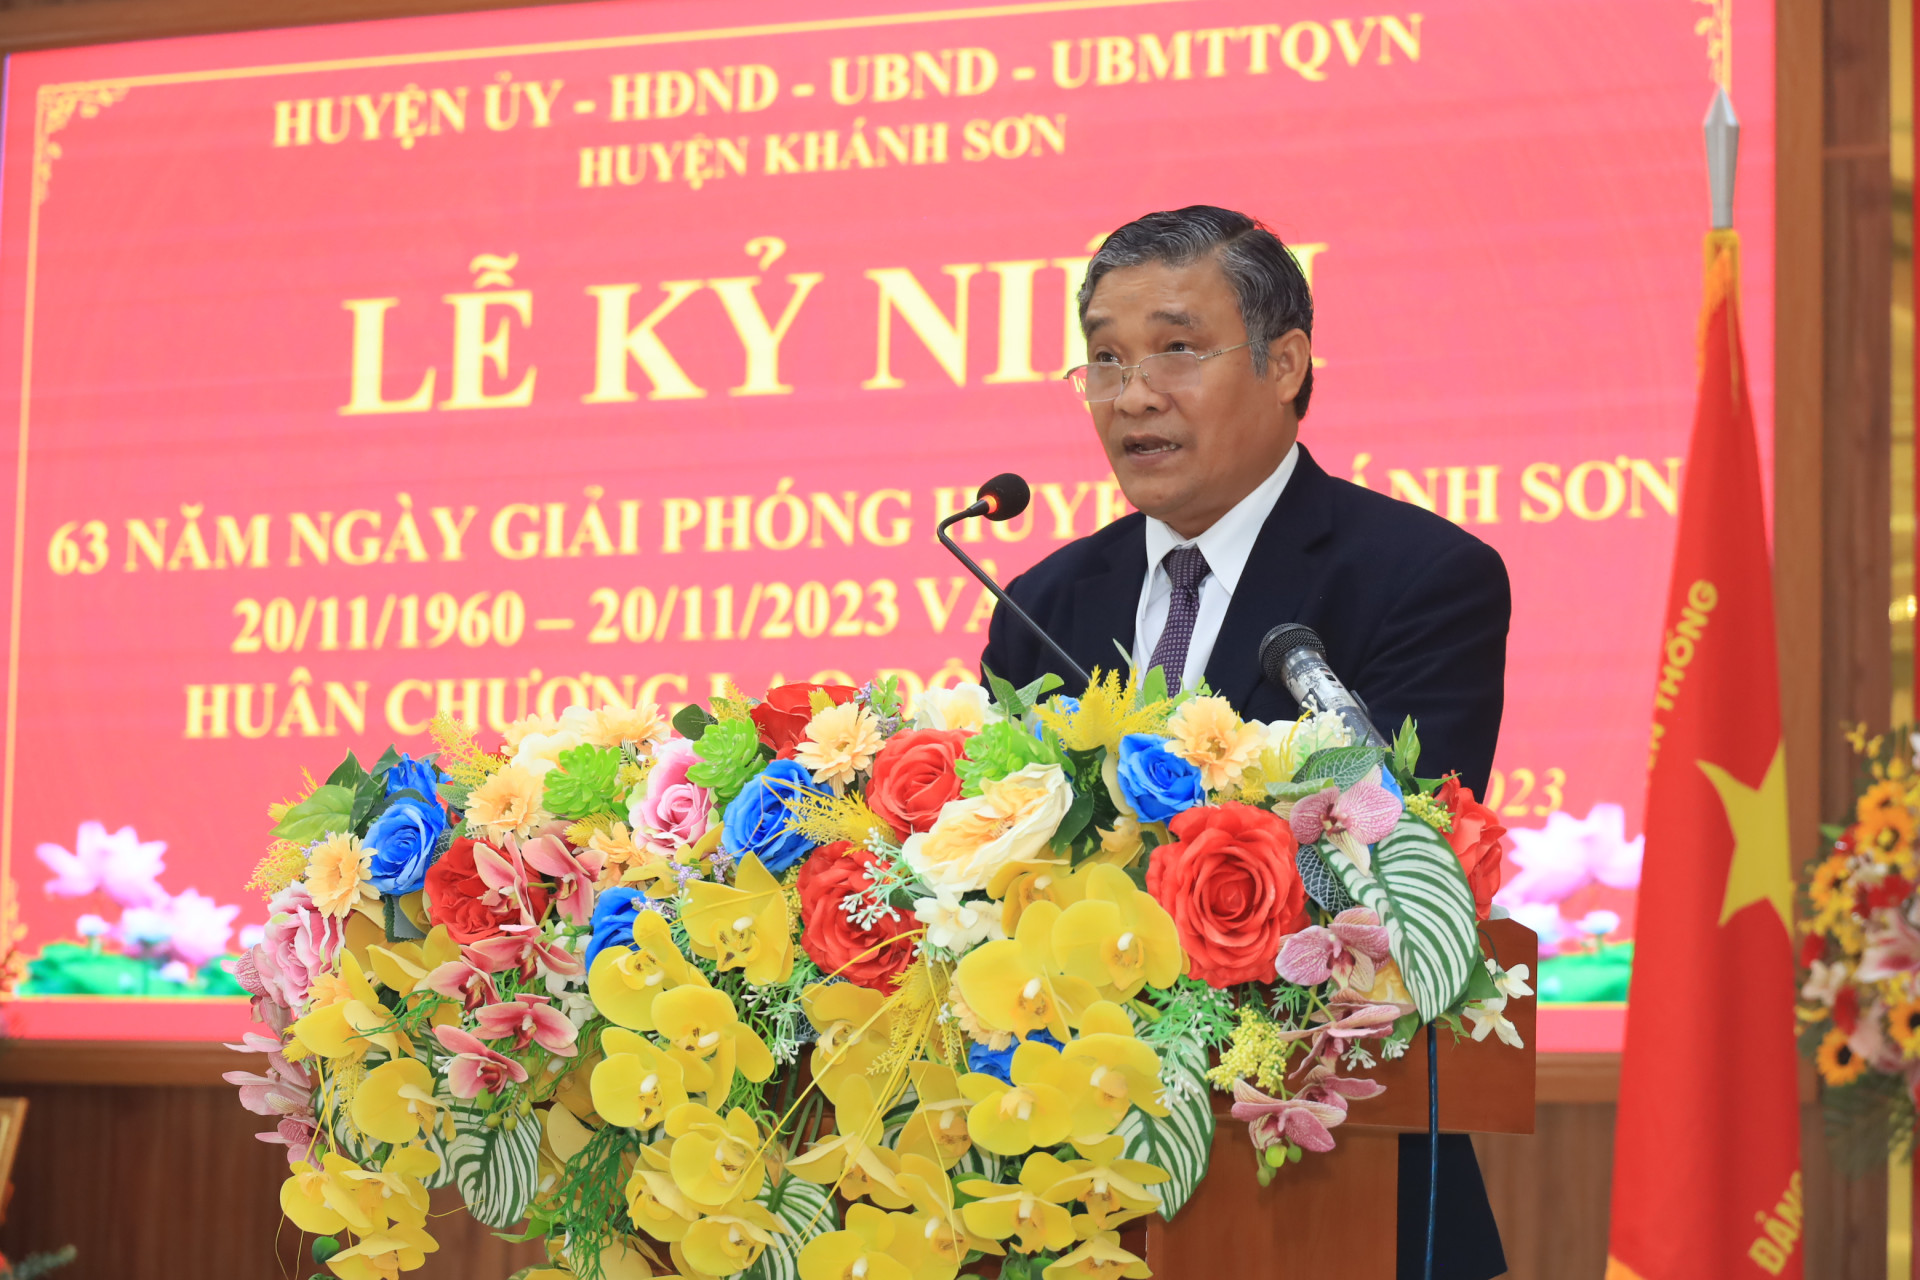 Ông Mấu Thái Cư - Bí thư Huyện ủy, Chủ tịch HĐND huyện Khánh Sơn phát biểu tại buổi lễ